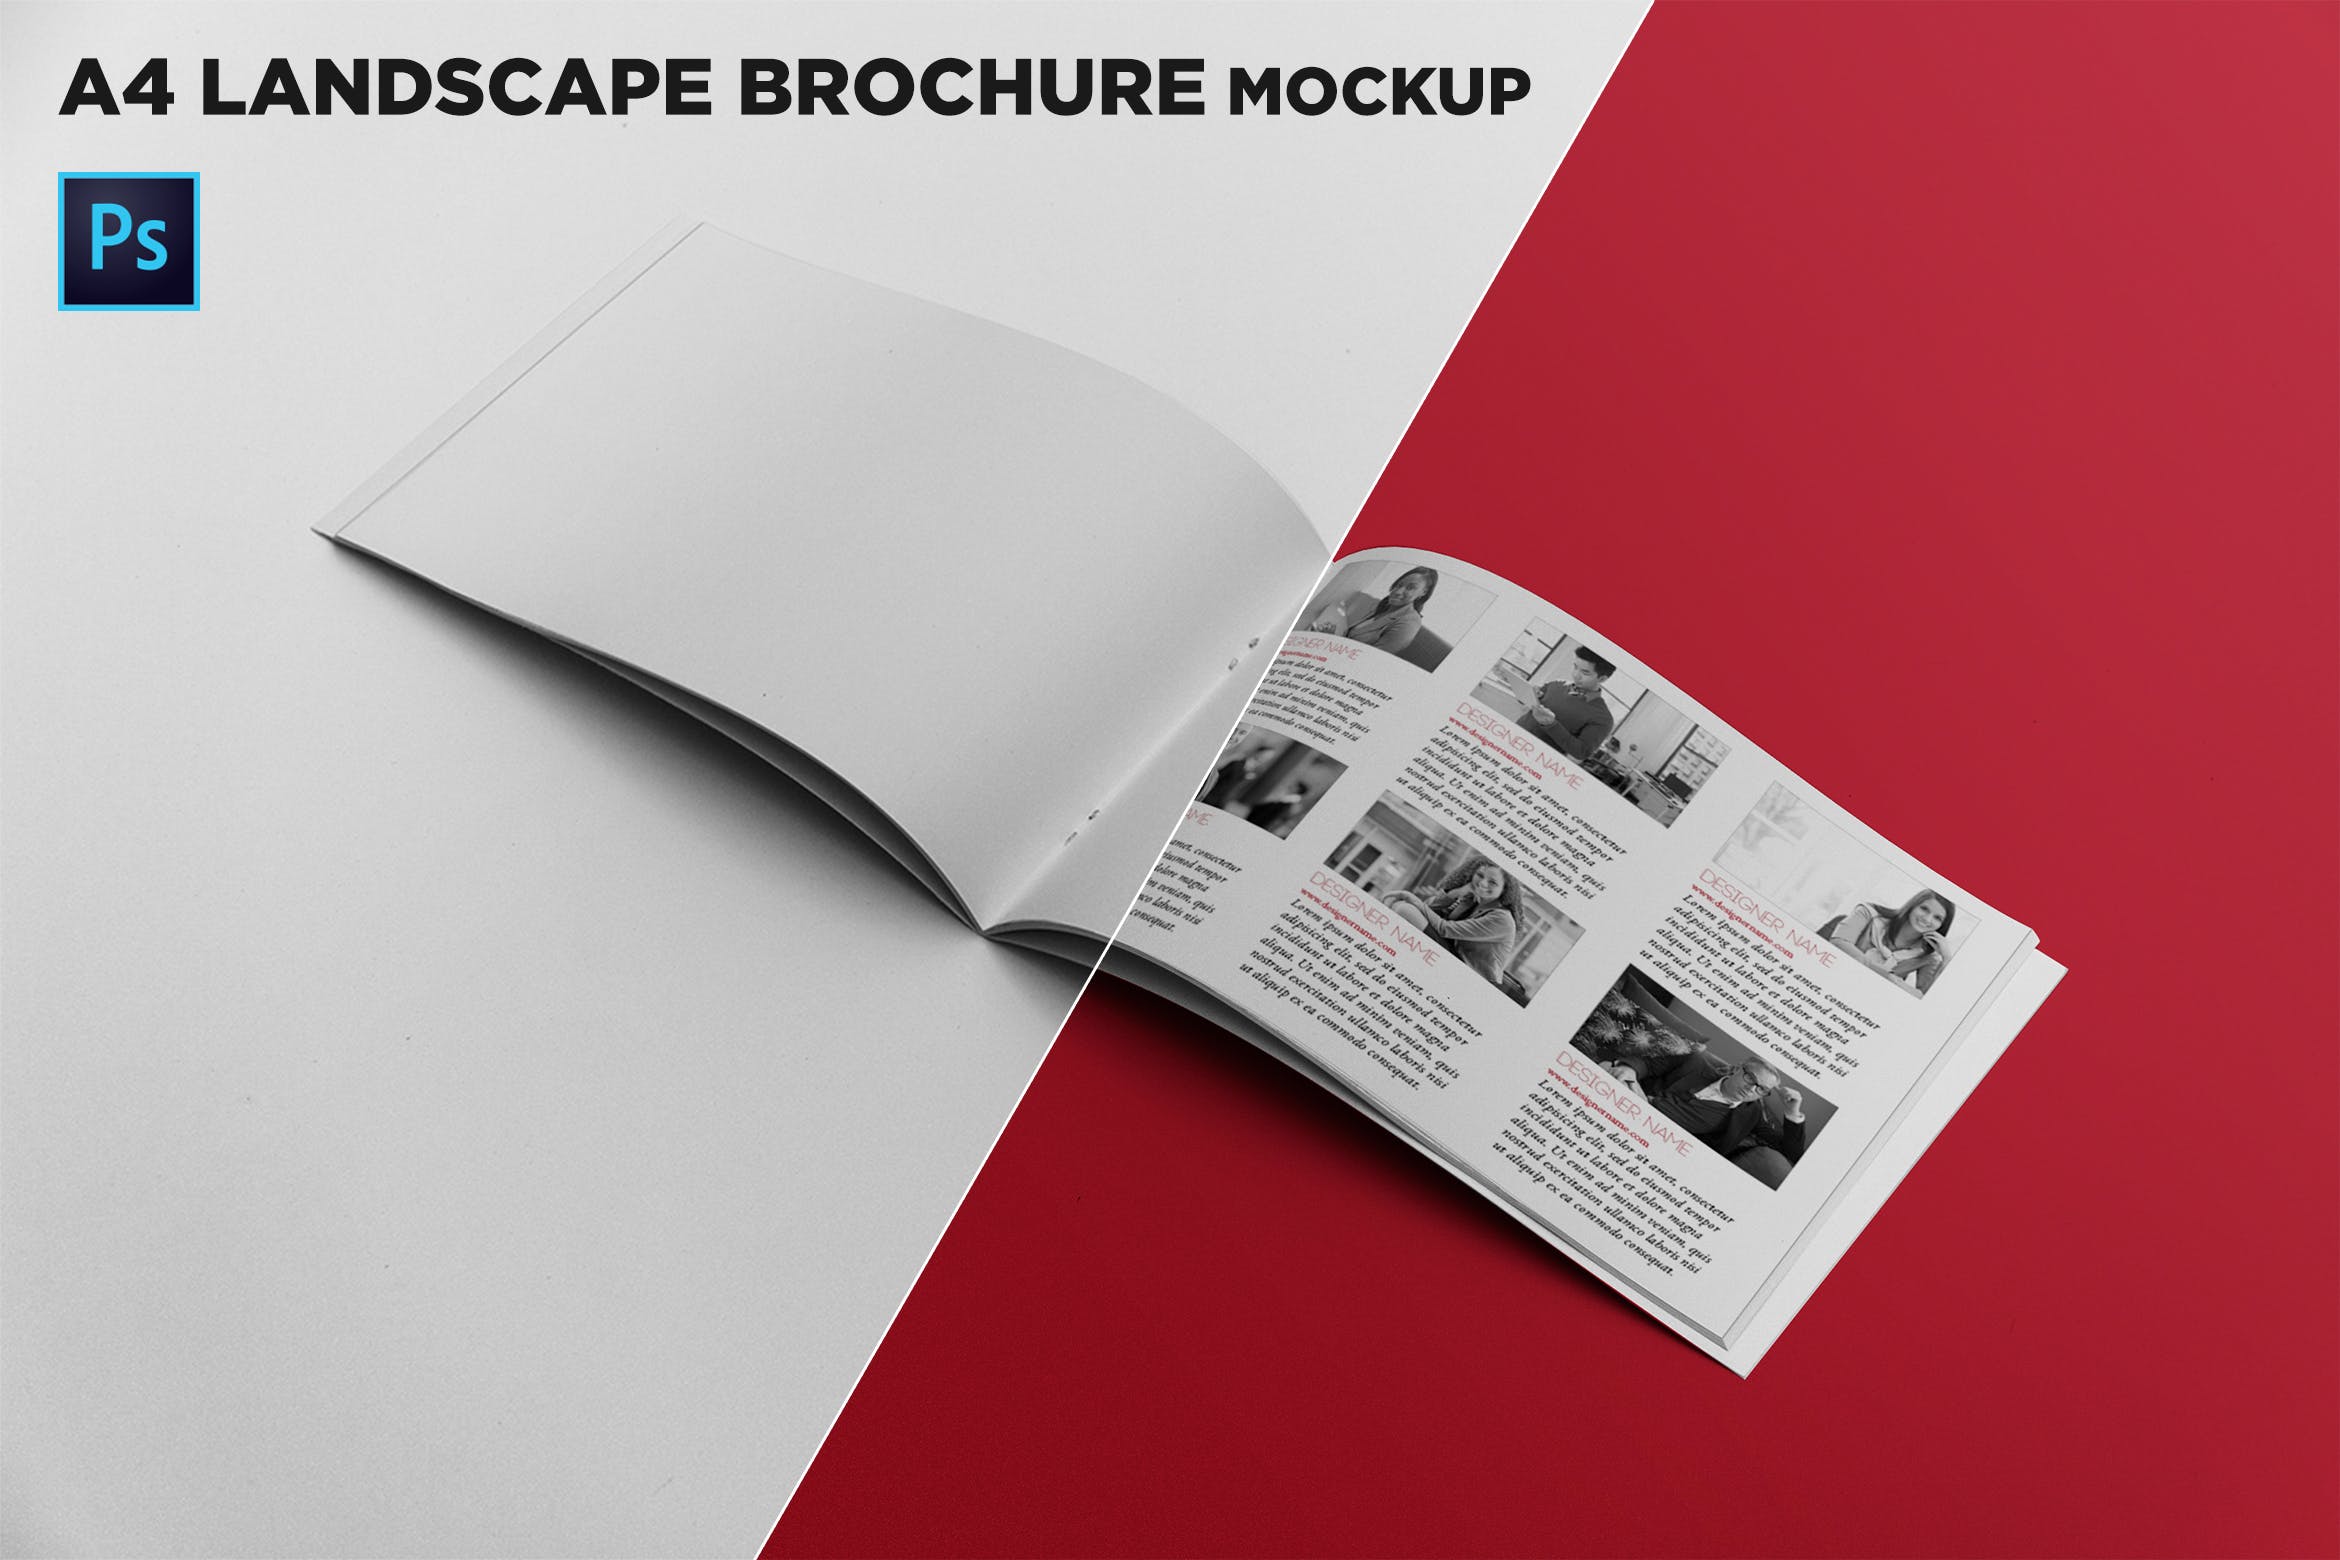 宣传画册/企业画册内页版式设计图样机非凡图库精选 Open Landscape Brochure Mockup插图